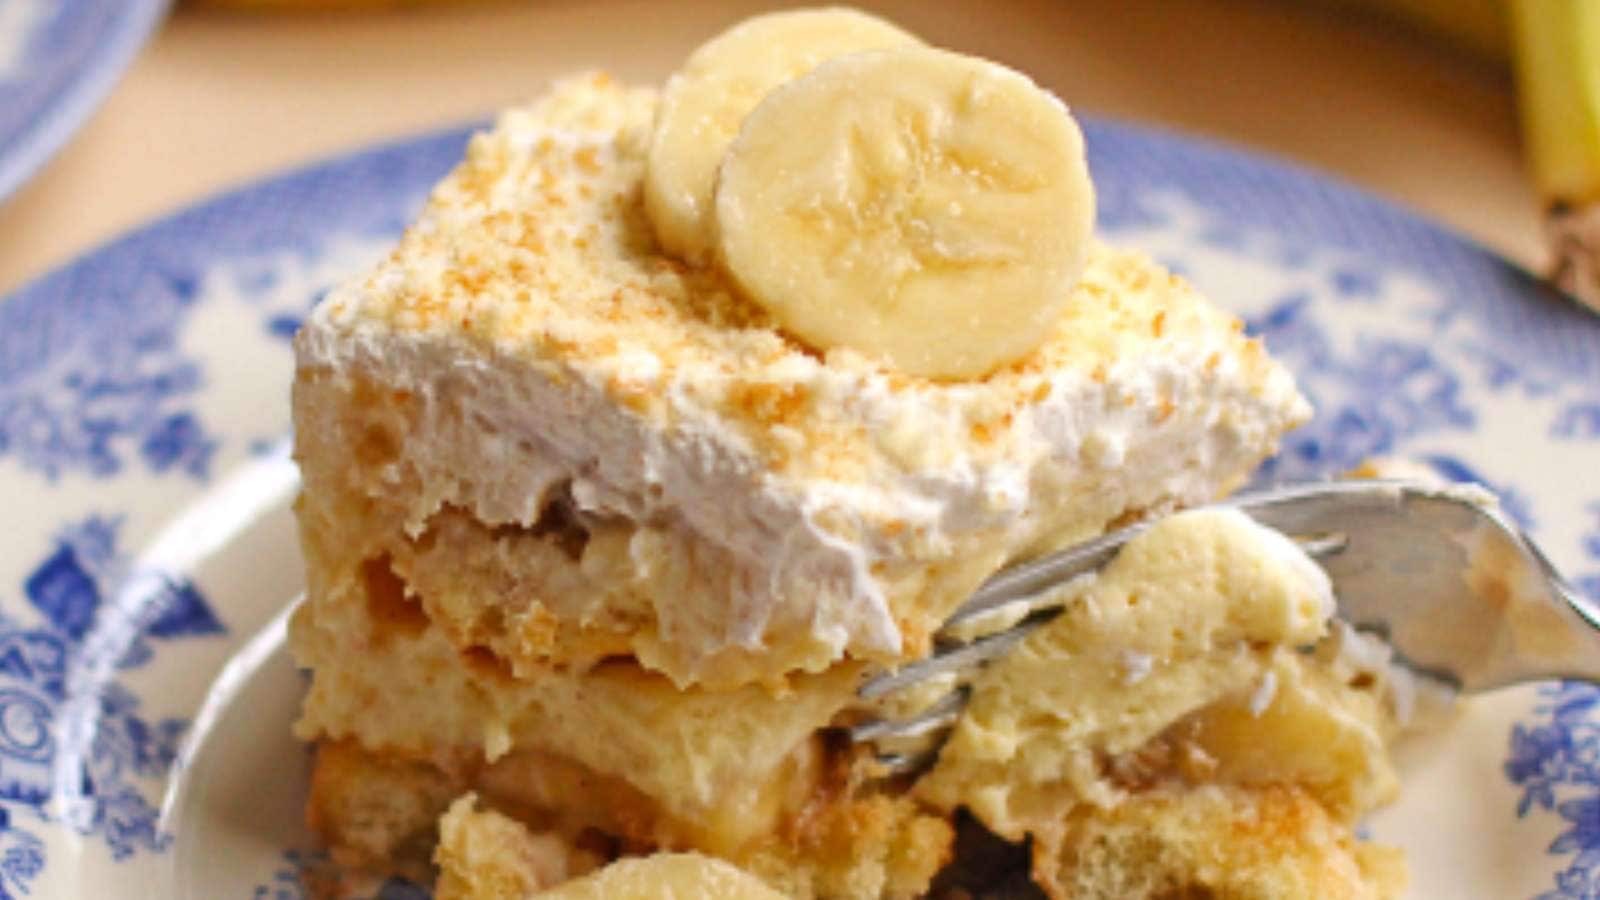 Banana Pudding Tiramisu recipe by Grand Baby Cakes.